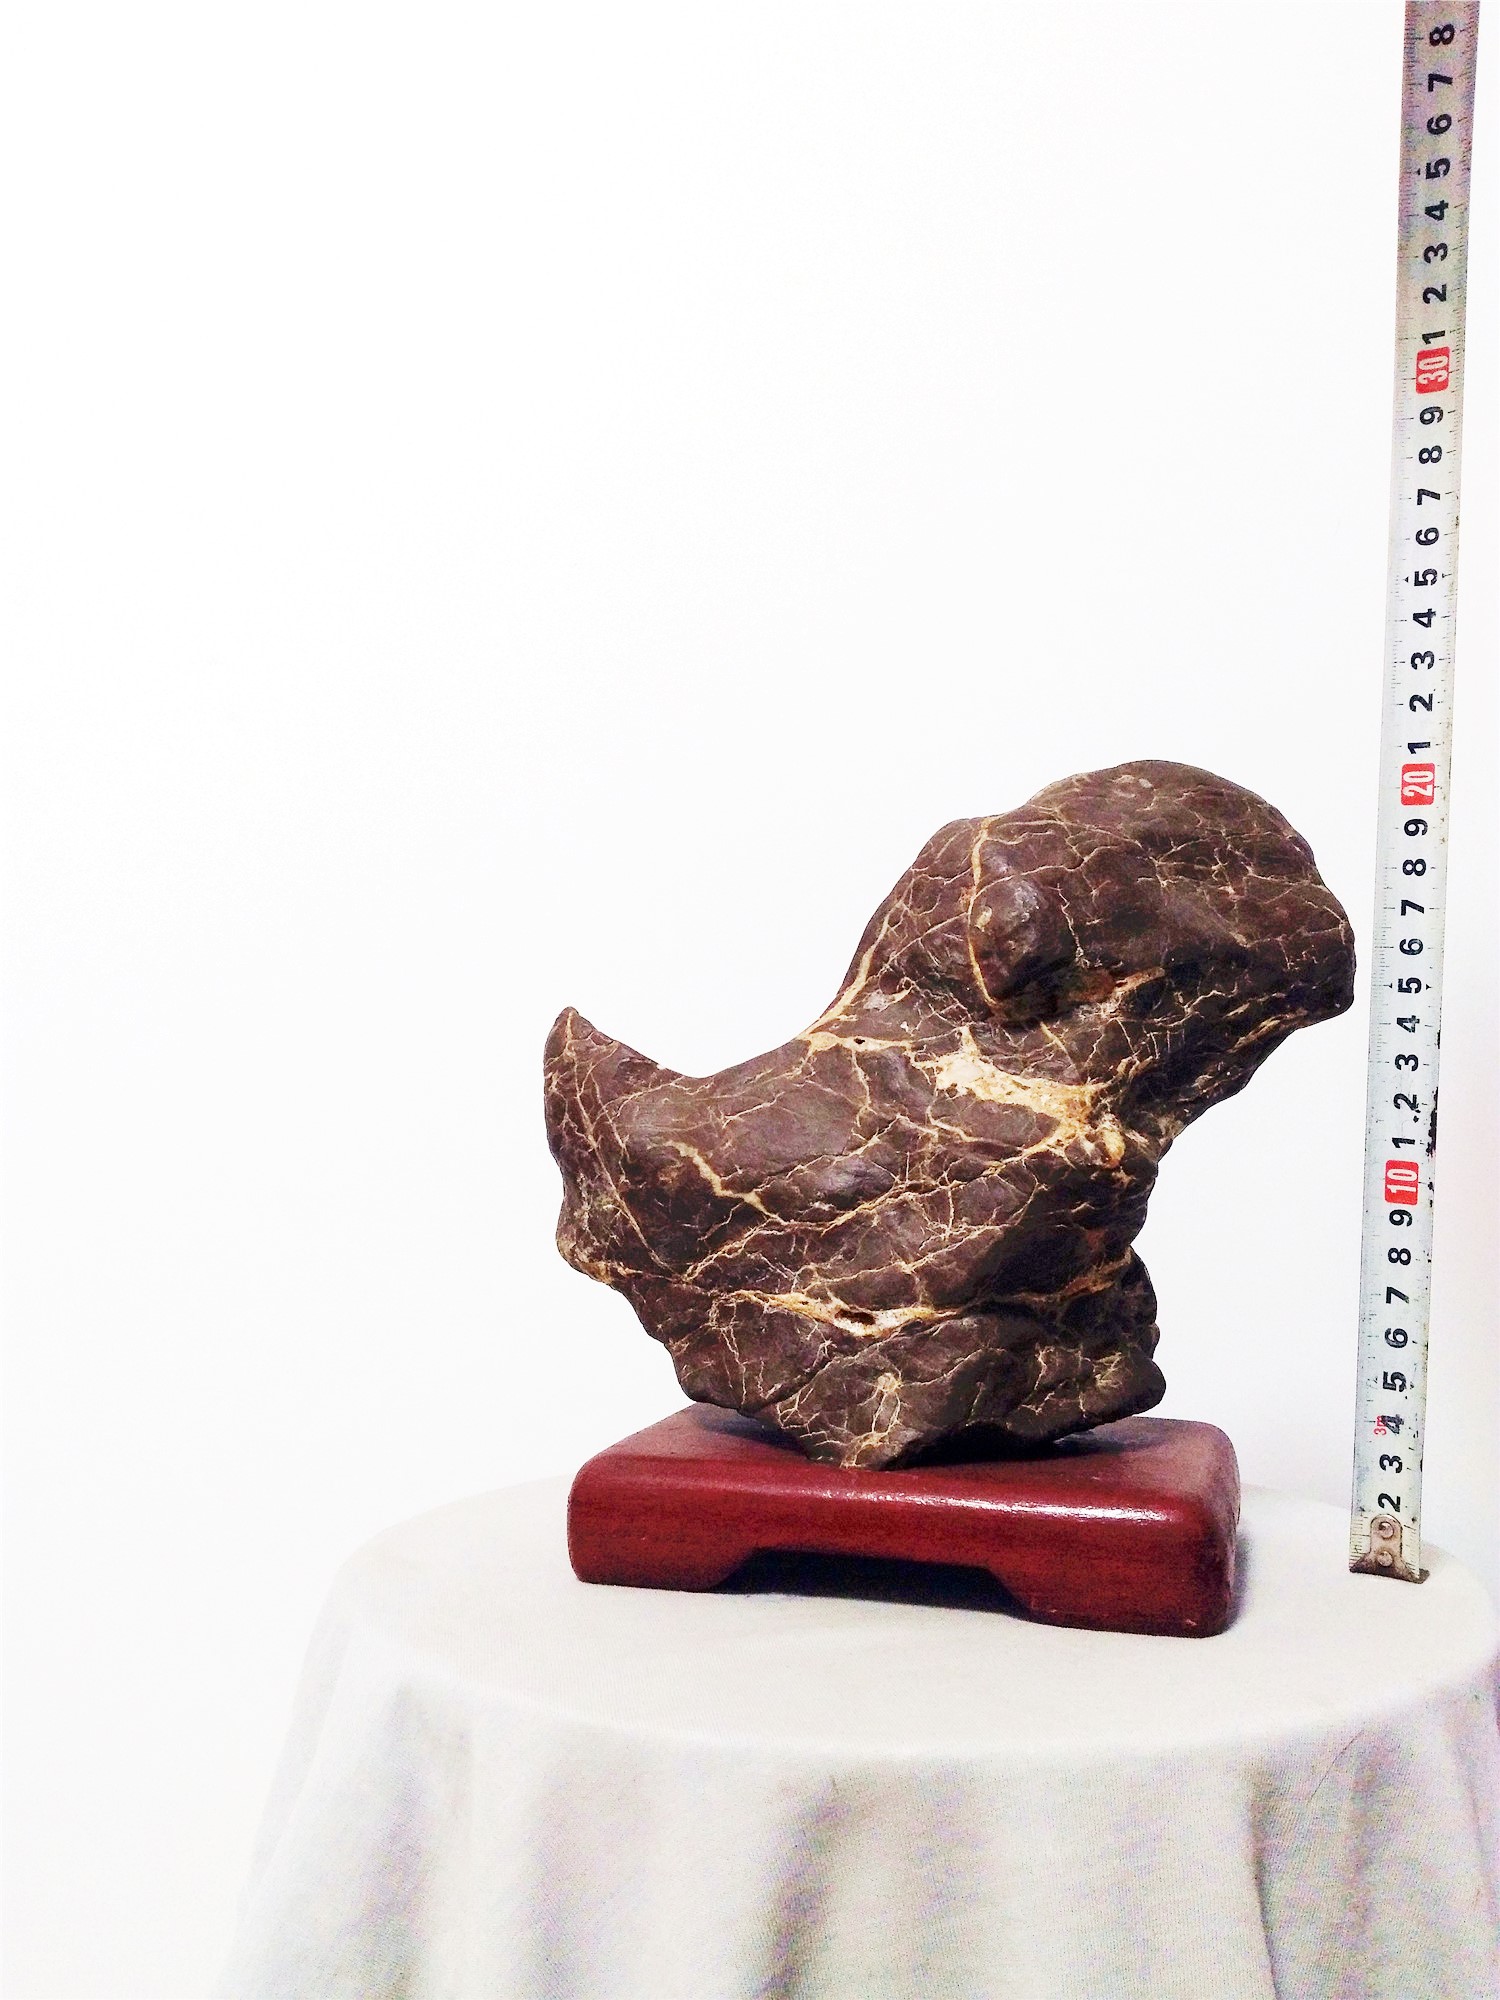 石馆 济南奇石  动物象形石藏品名称:动物象形石 石种:类灵璧石 产地